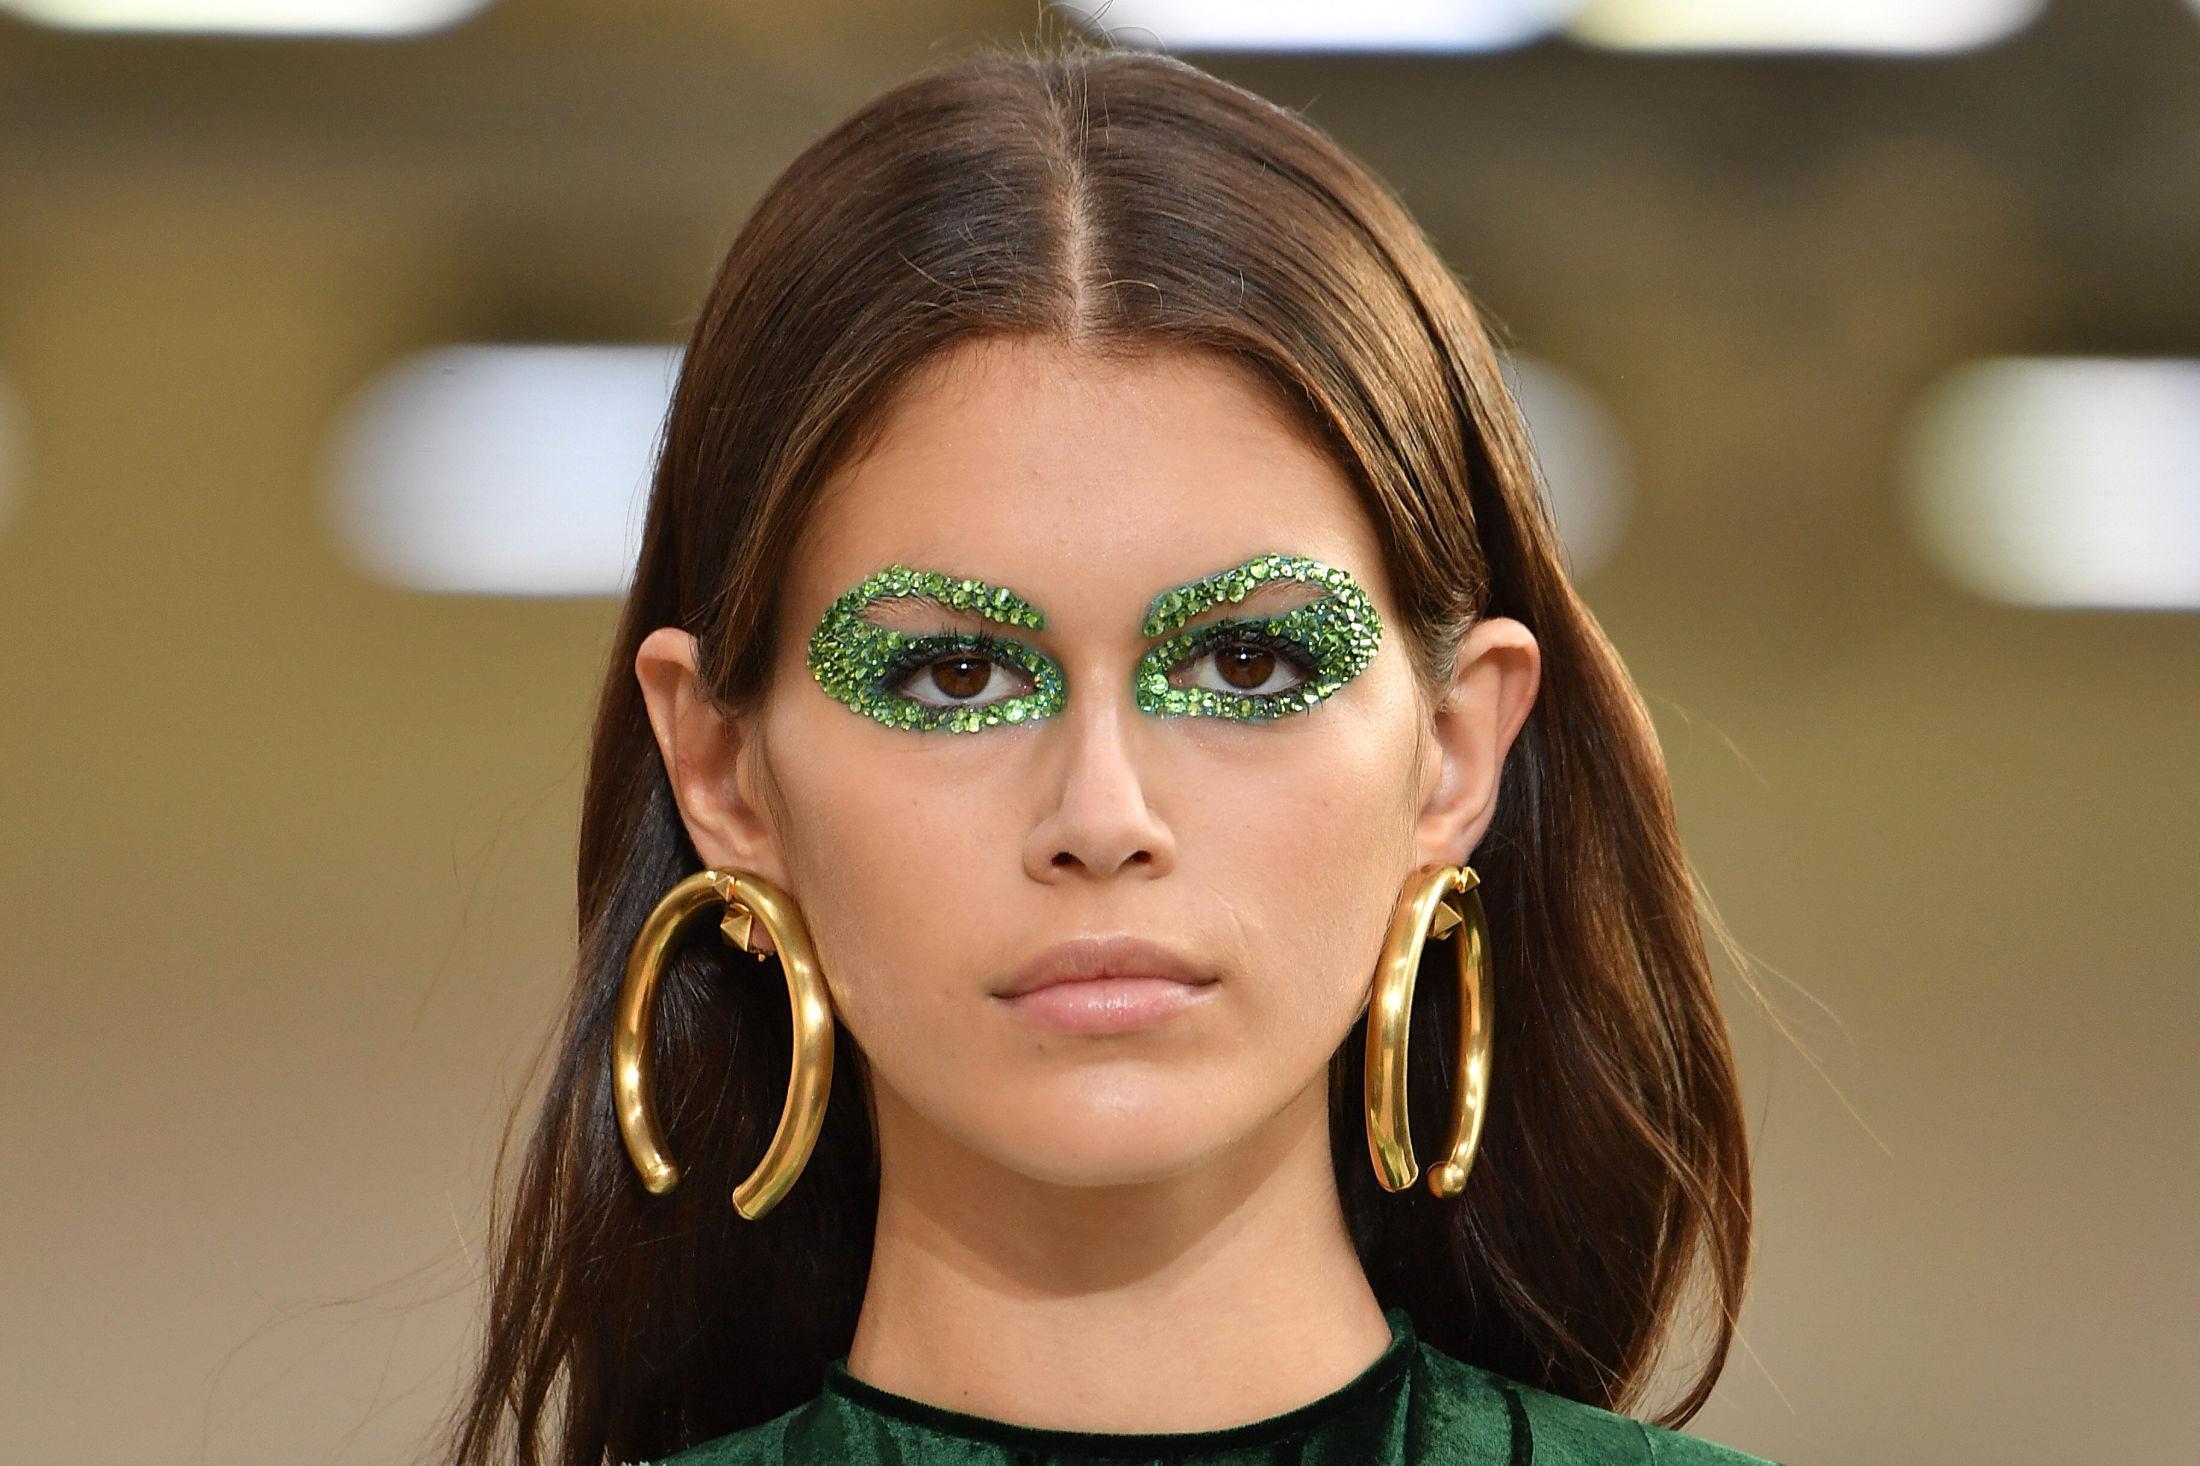 PÅ CATWALKEN: Supermodell Kaia Gerber på catwalken for Valentino under Paris Fashion Week. Glitter rundt øyene var tydelig en av trendene. Foto: Getty Images